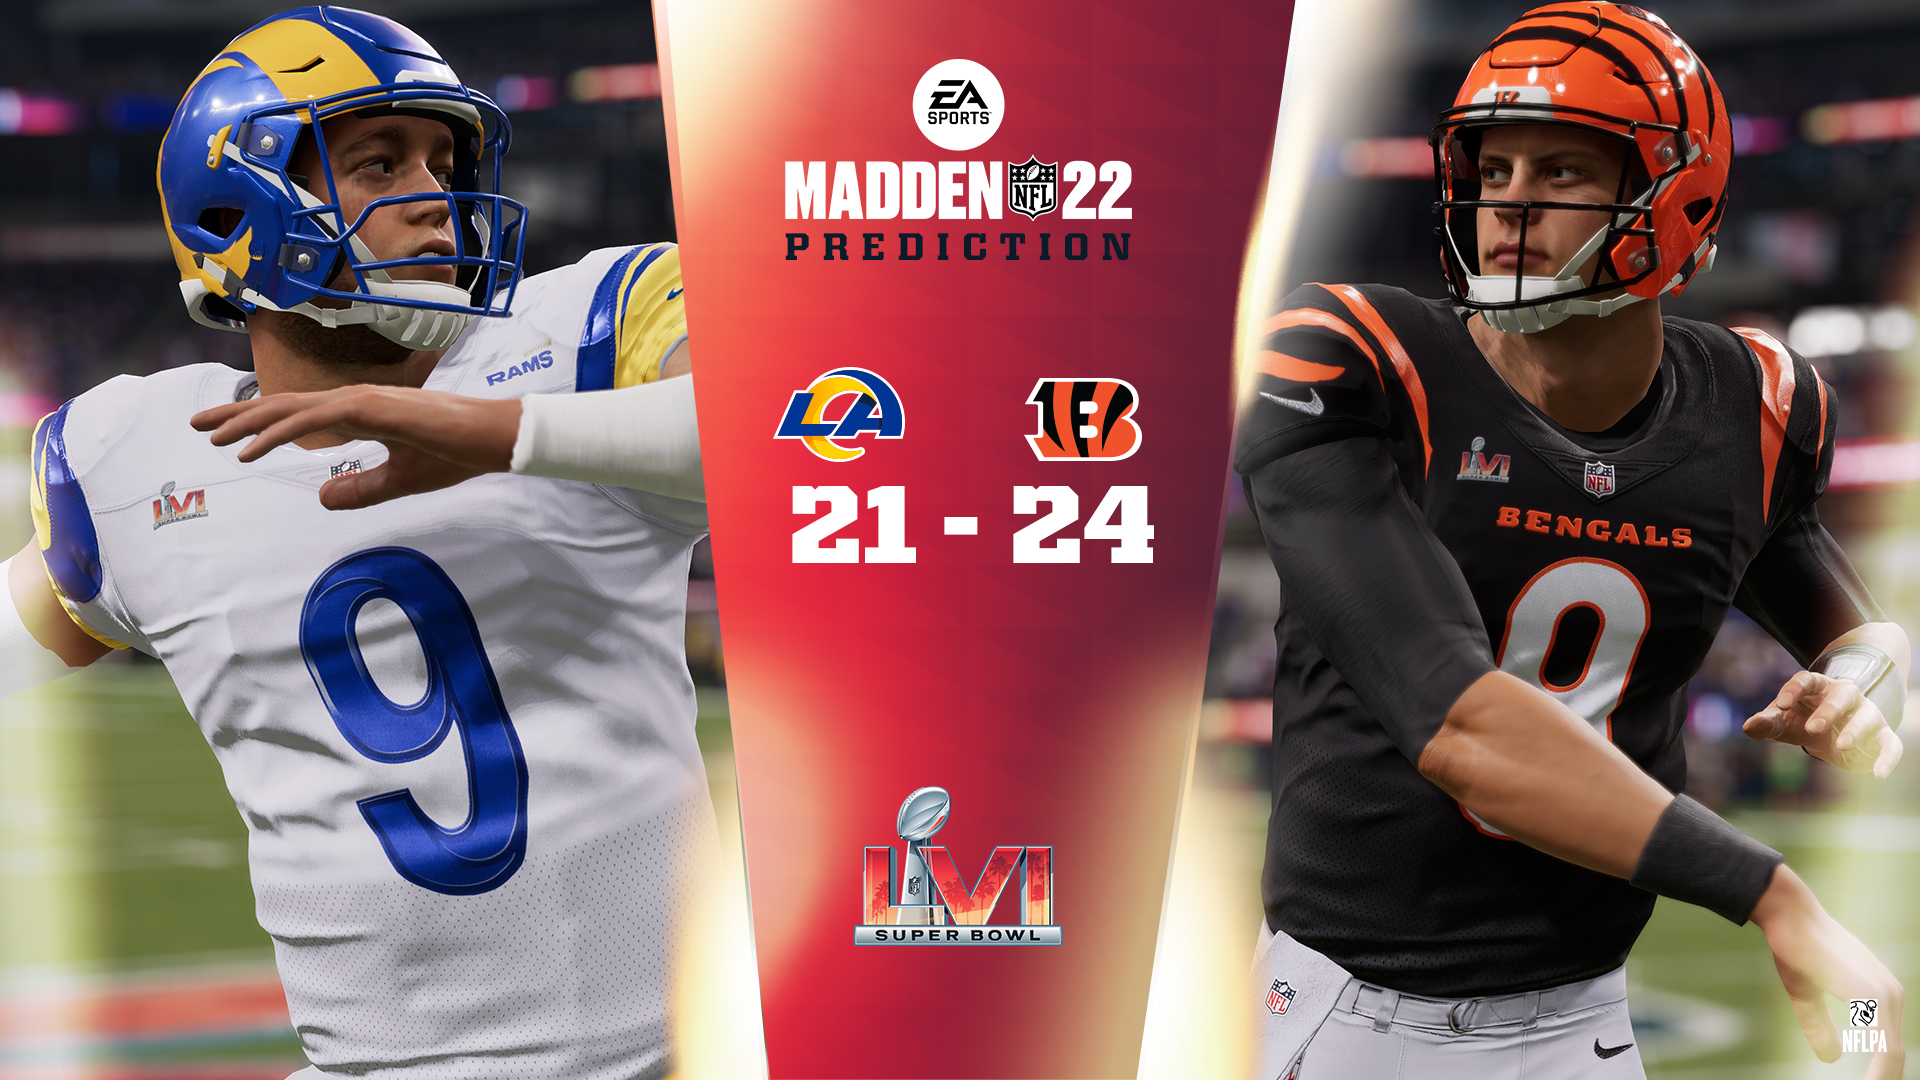 Madden NFL 22’s Super Bowl LVI prediction: Bengals over the Rams, 24-21